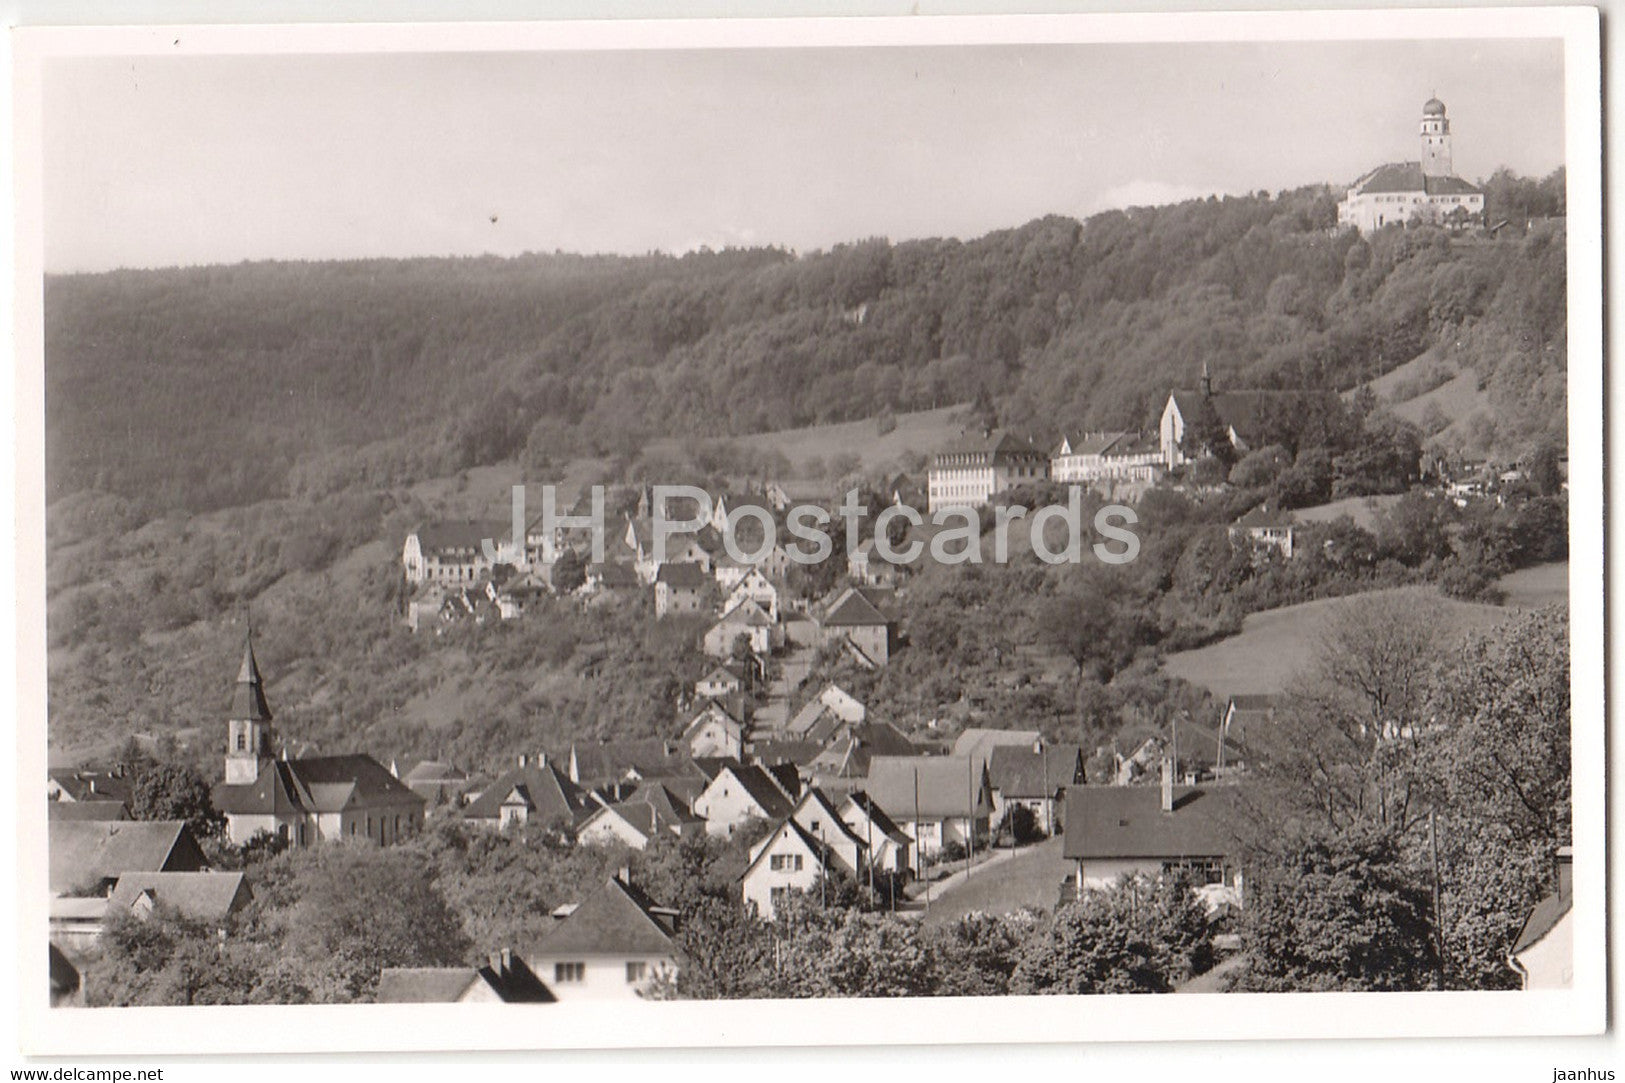 Stuhlingen i Wutachtal - Germany - unused - JH Postcards